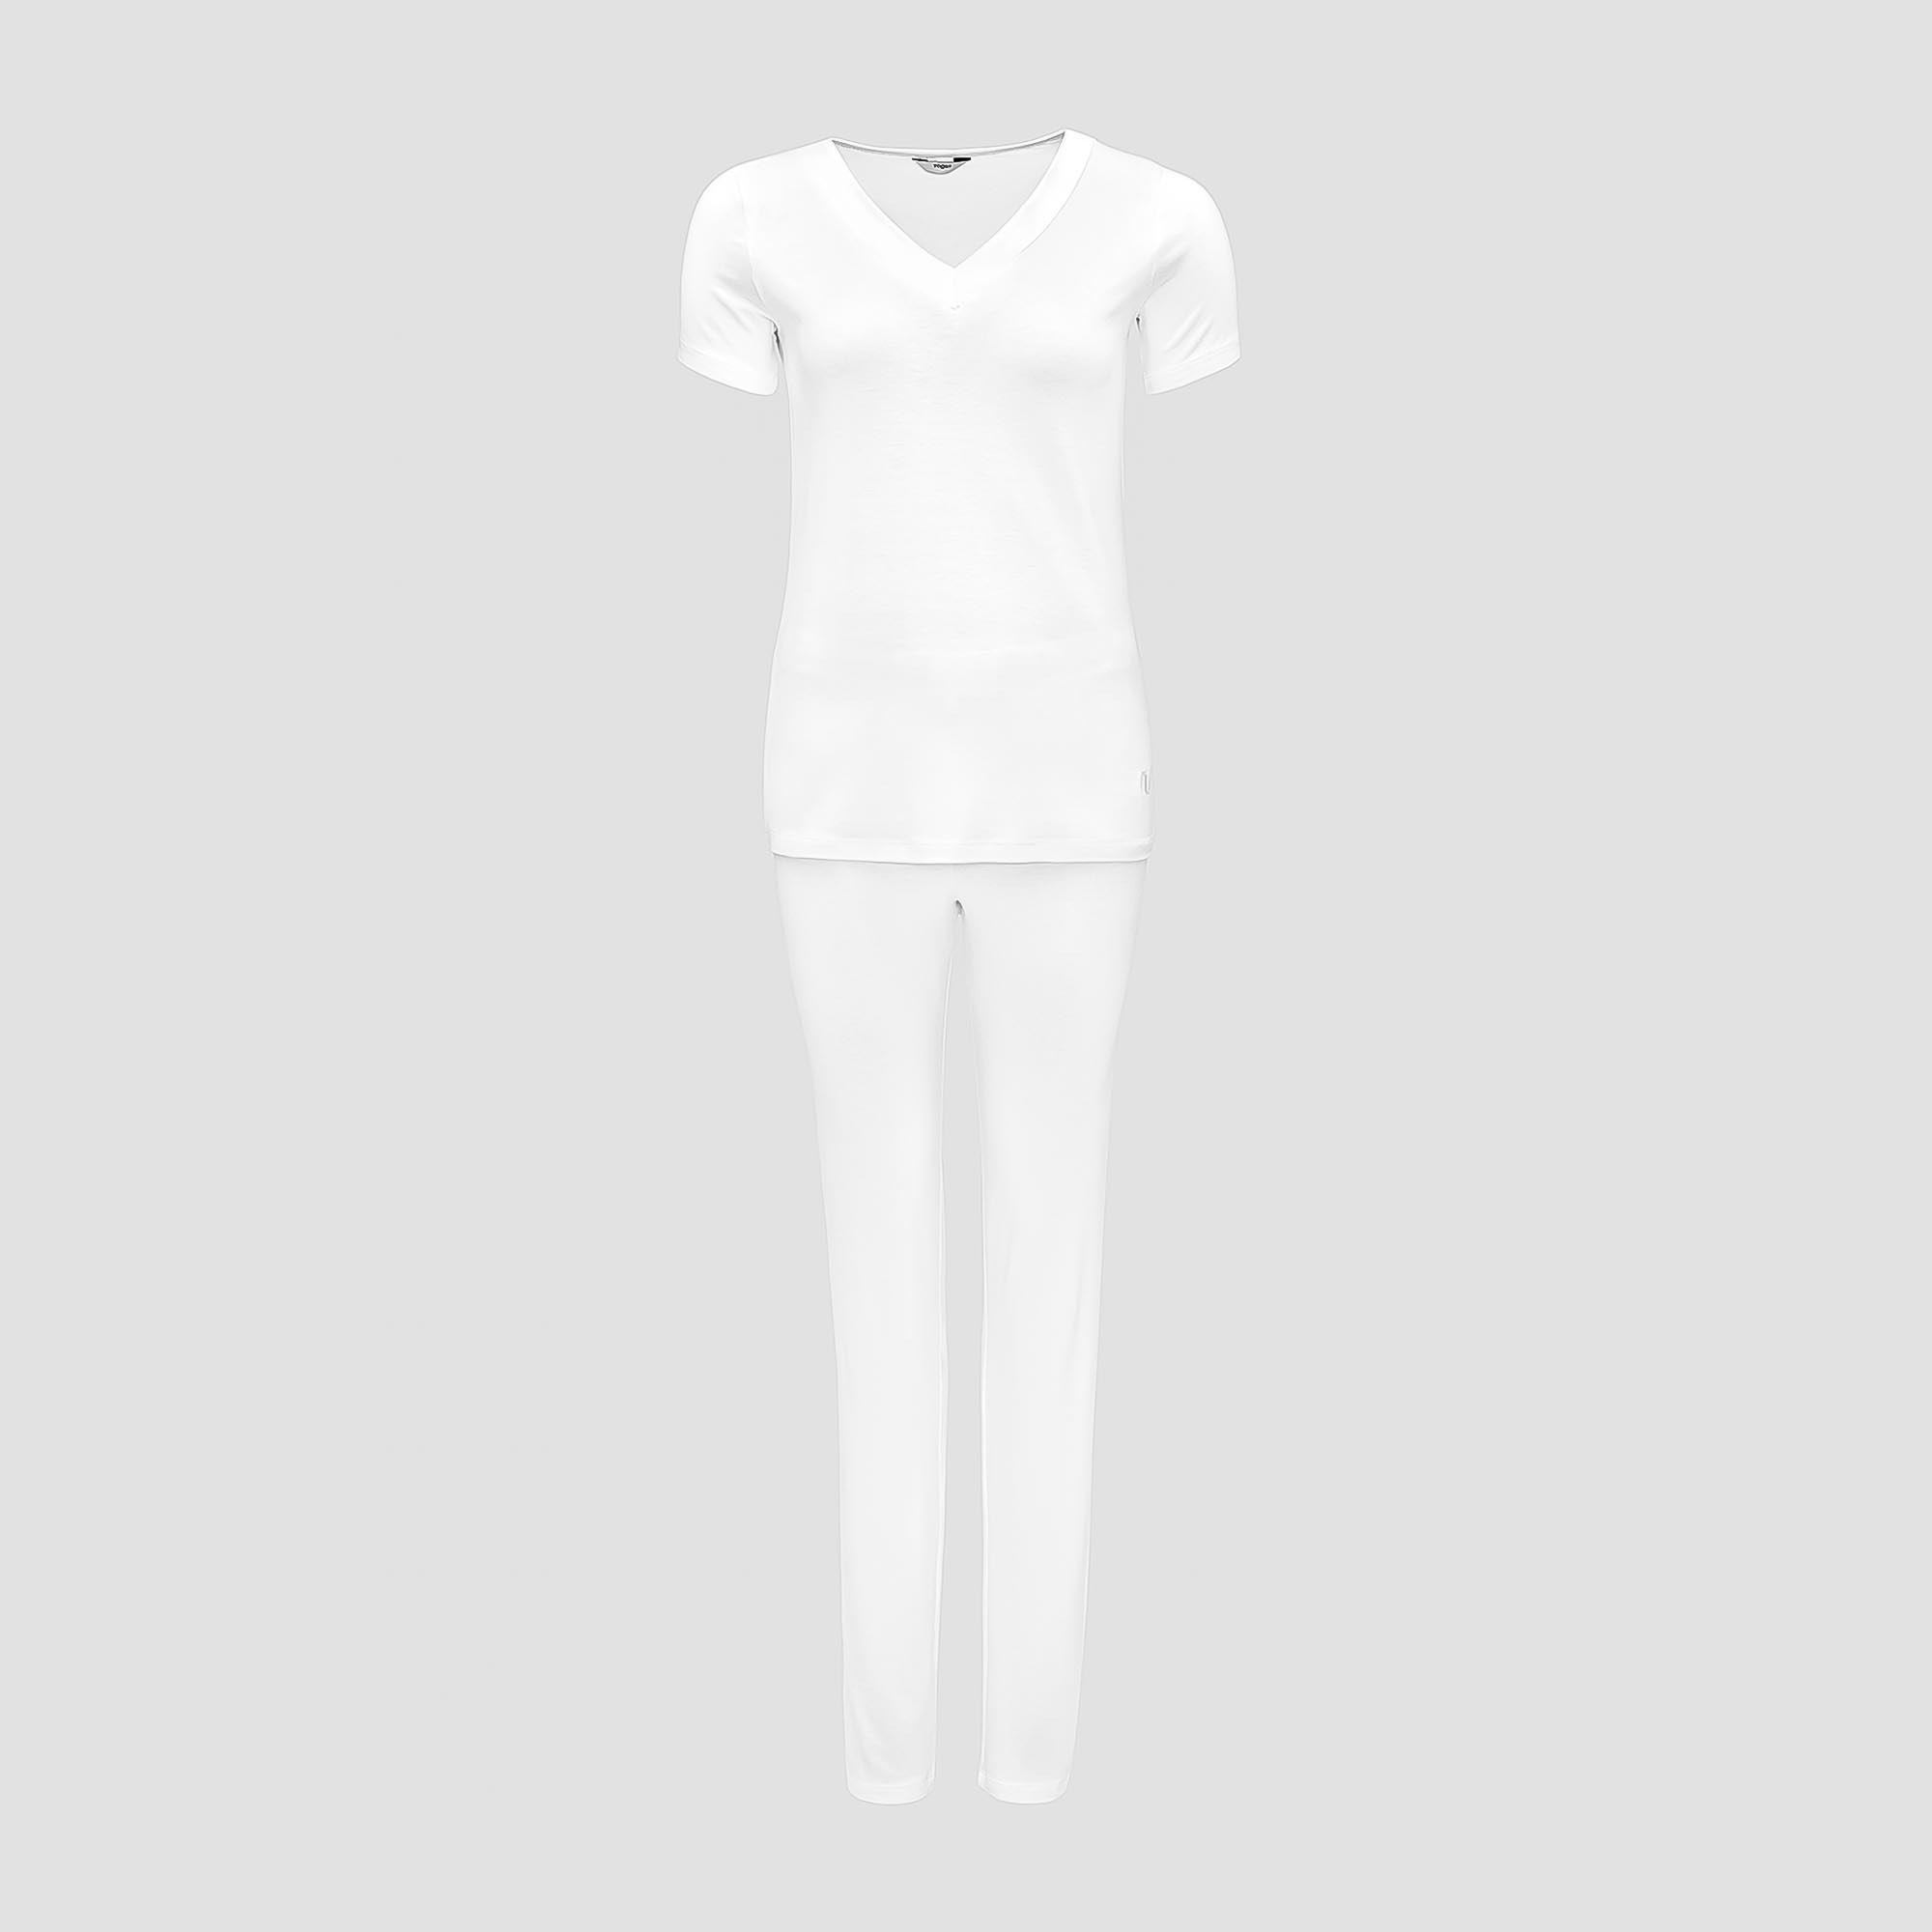 Пижама Togas Ингелла белая женская M(46) 2 предмета жен пижама с шортами инь янь белый р 48